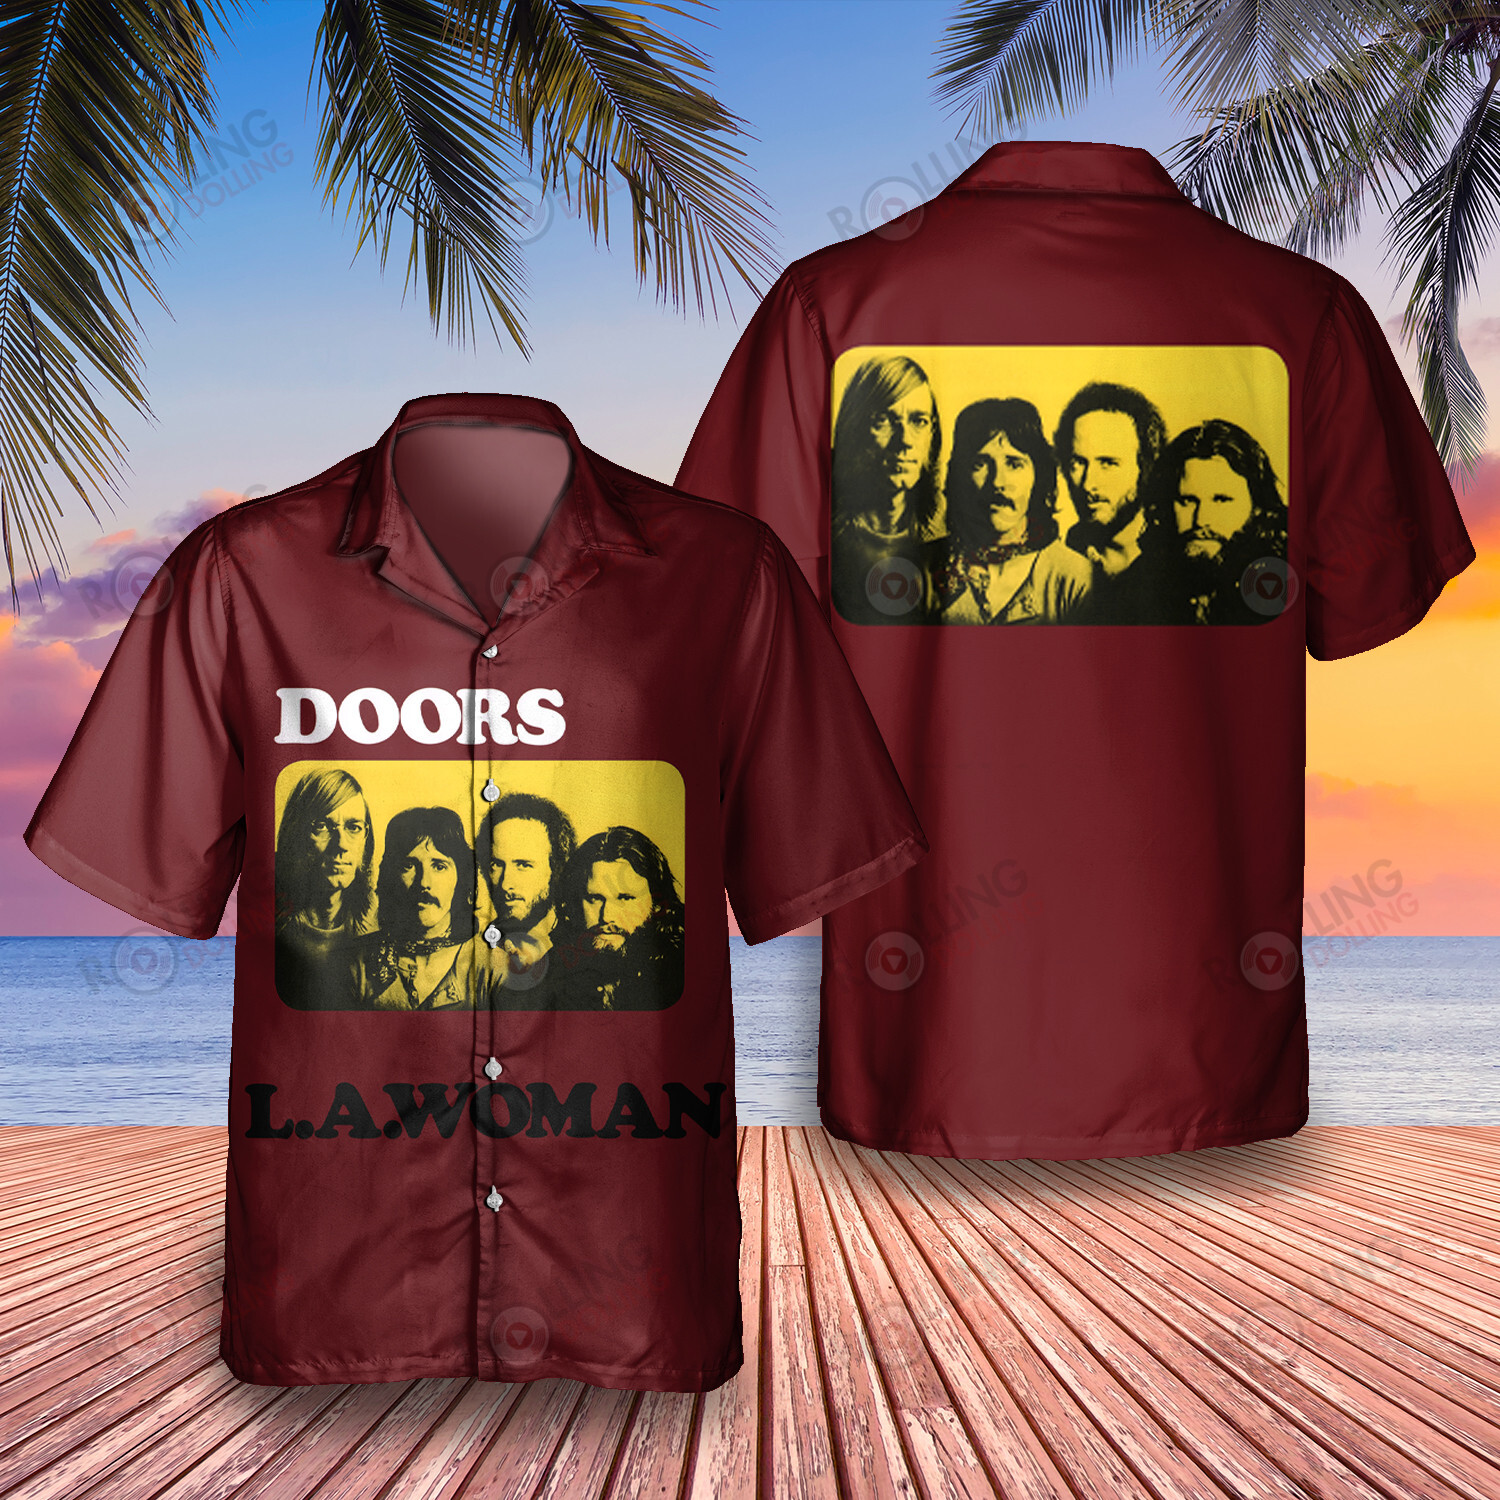 HOT The Doors L.A. Woman Album Tropical Shirt2